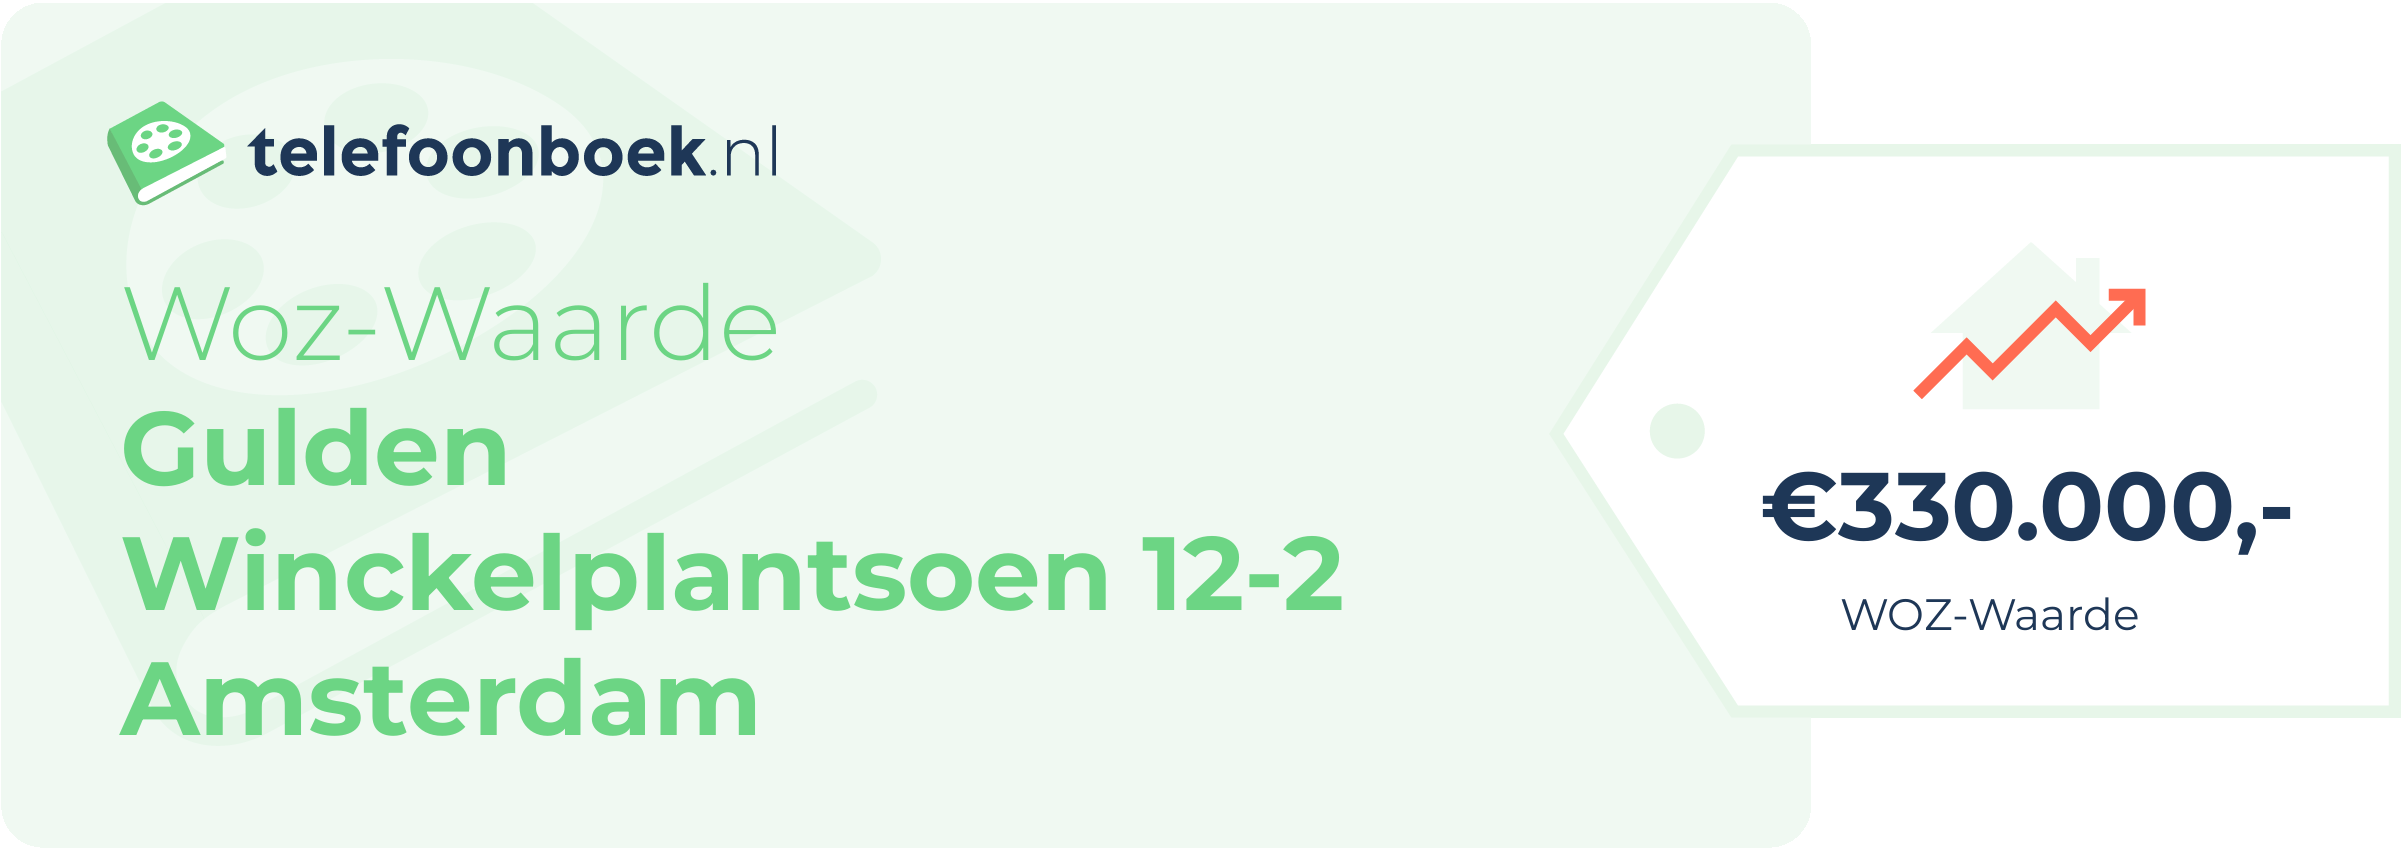 WOZ-waarde Gulden Winckelplantsoen 12-2 Amsterdam